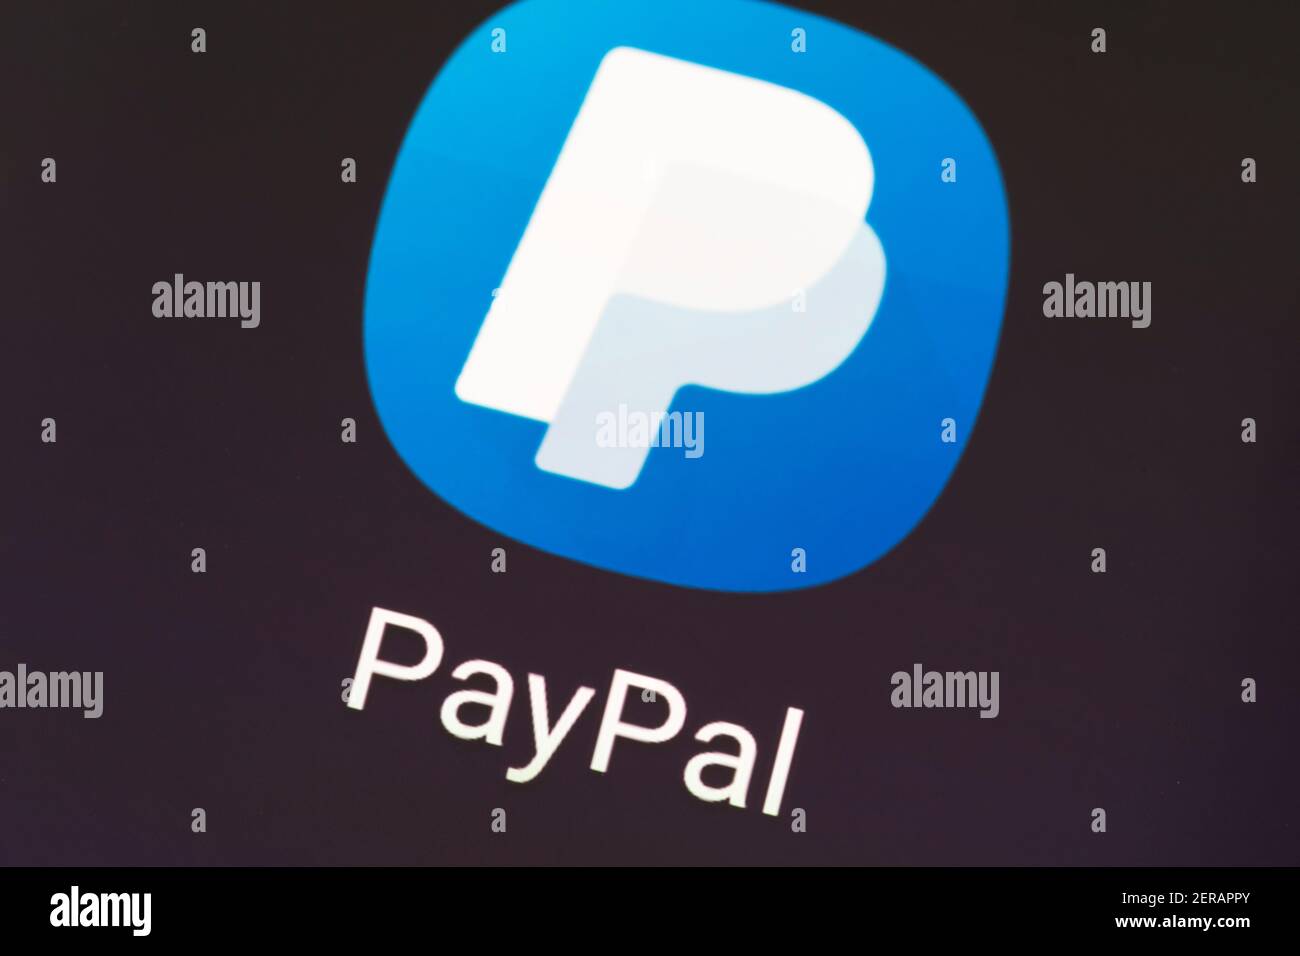 Un'immagine macro del logo dell'app PayPal sullo schermo del telefono. PayPal Holdings Inc. È una società americana che opera un sistema di pagamento online Foto Stock